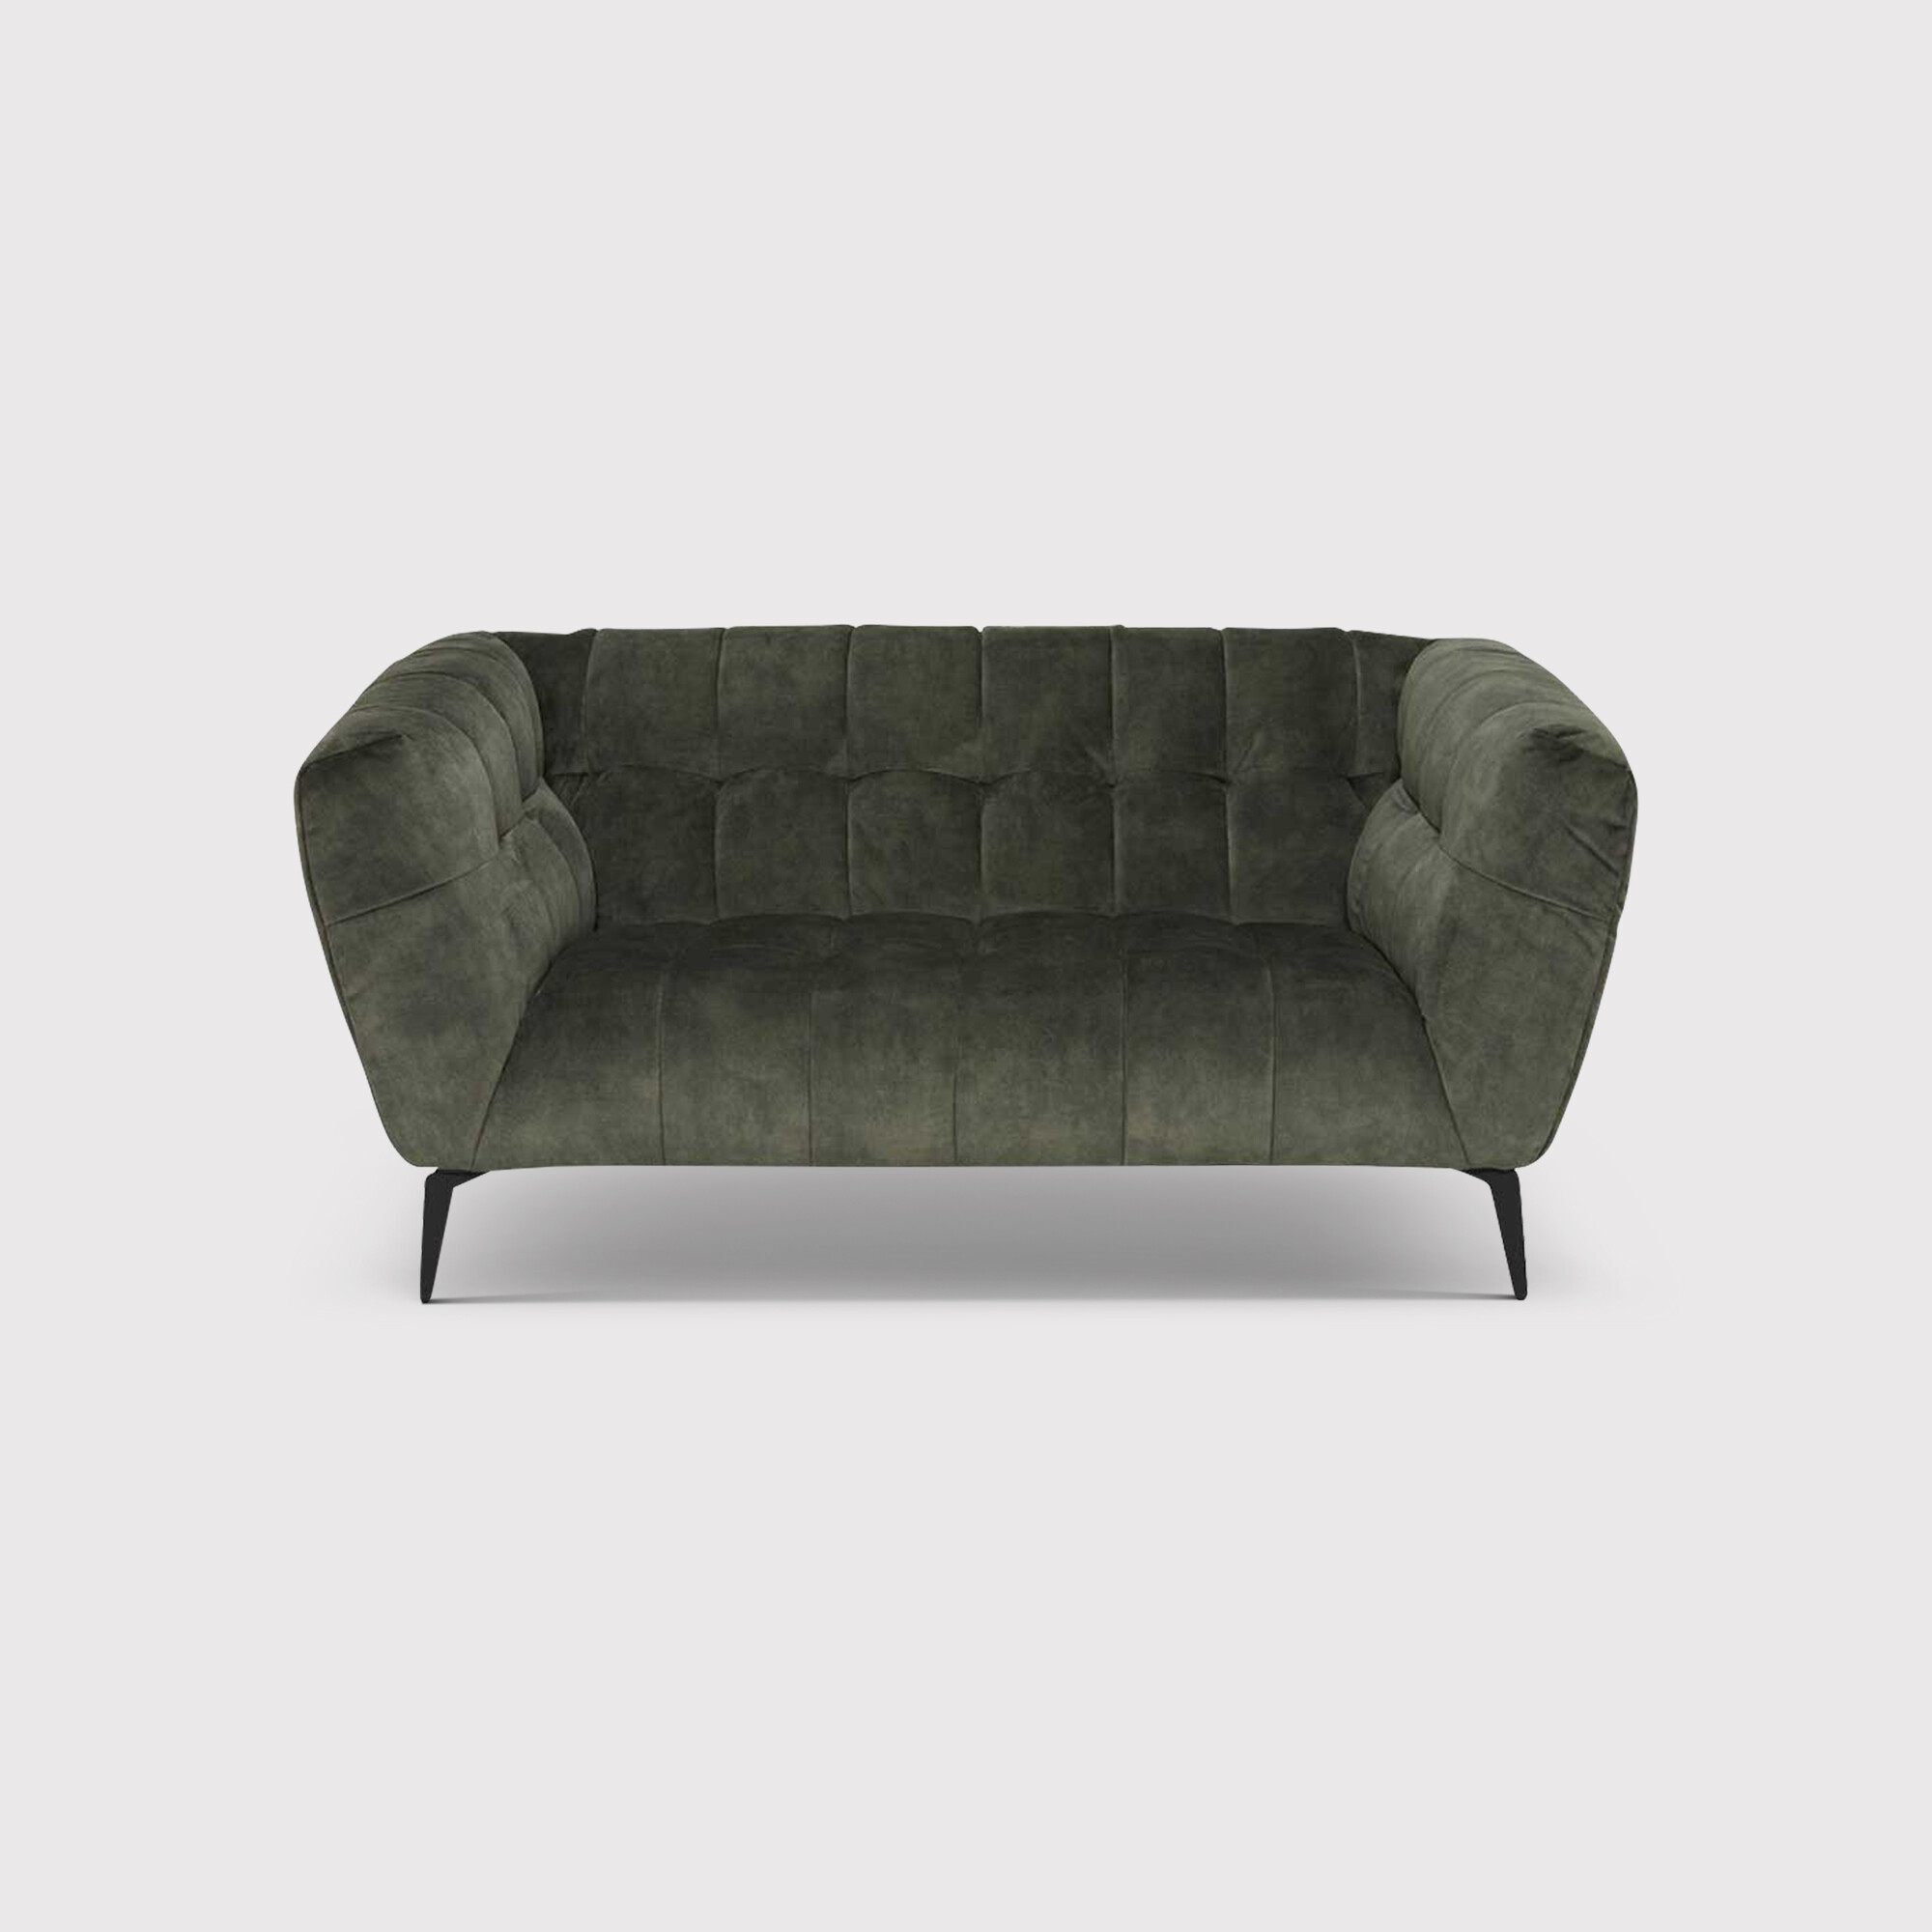 Azalea 1.5 Seater Sofa, Green Fabric | Barker & Stonehouse